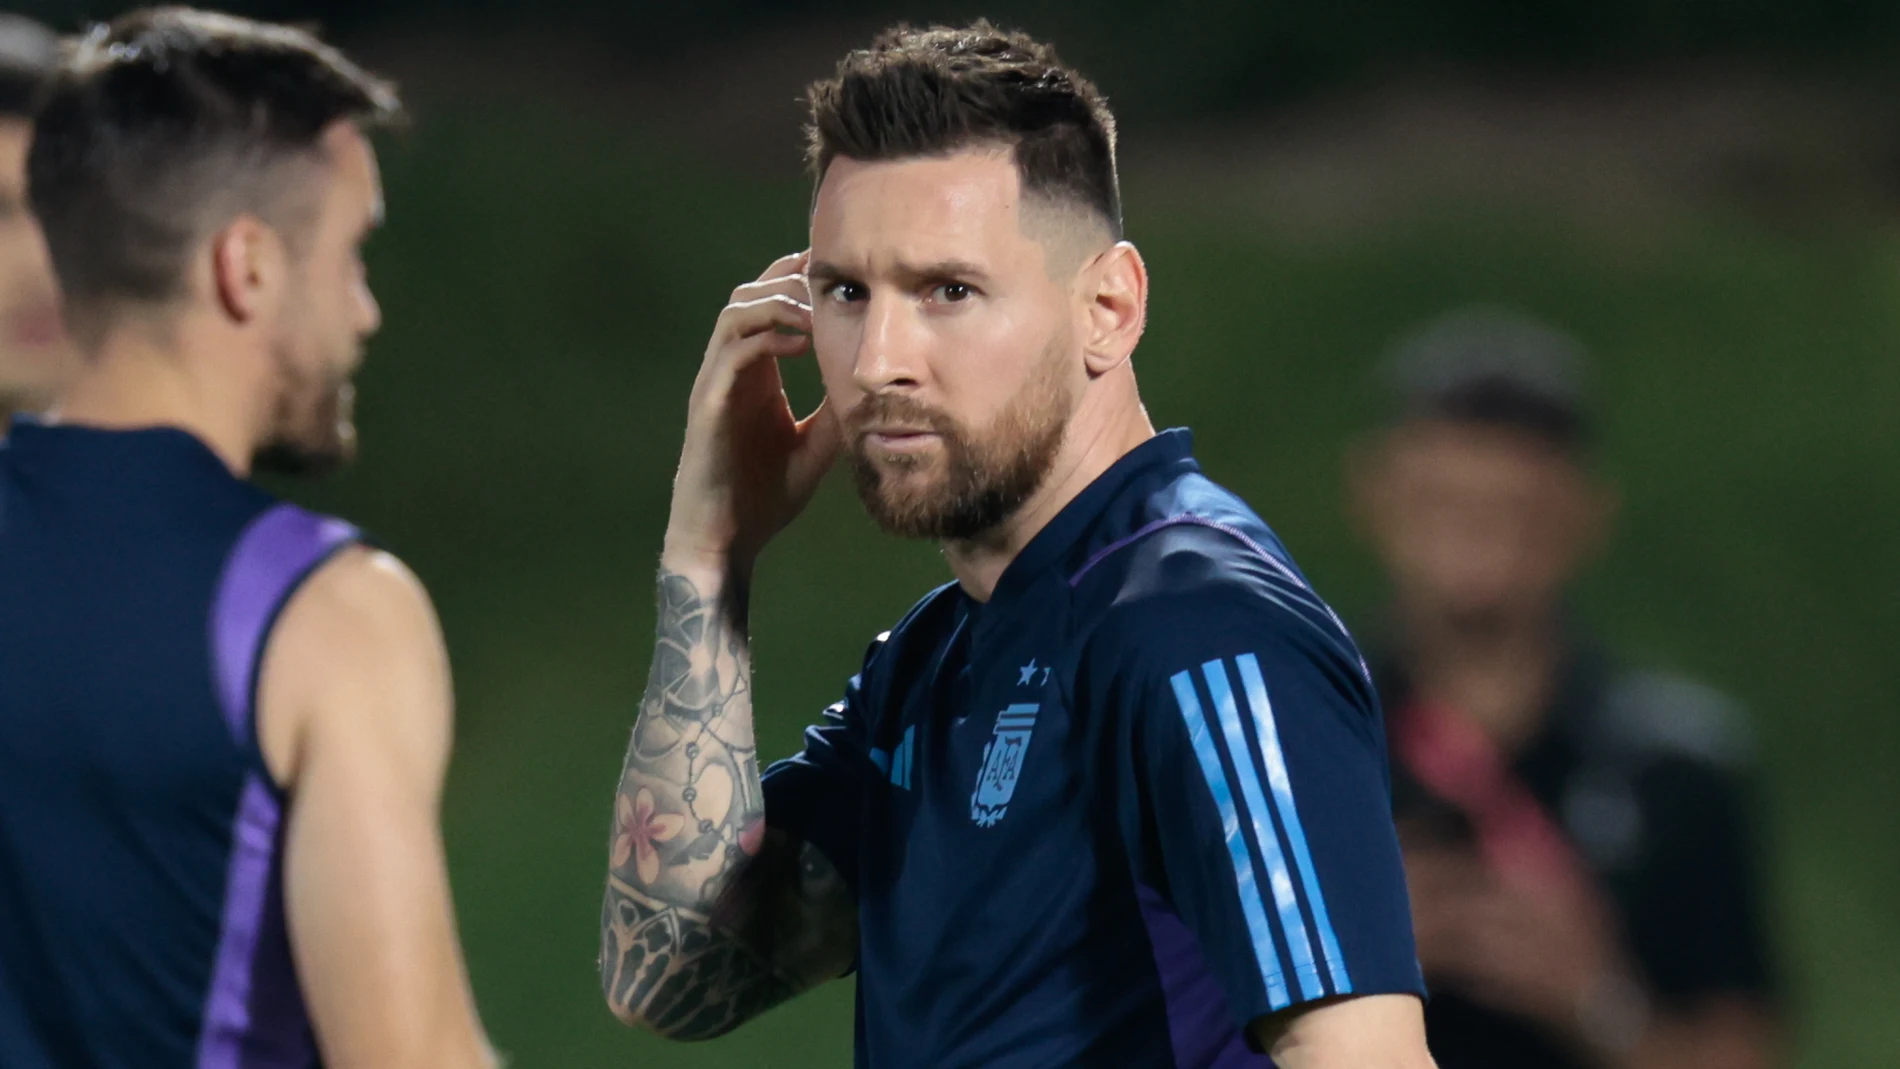 Leo Messi, que se enfrenta con Argentina a Países Bajos, quiere llegar a la final del Mundial de Qatar